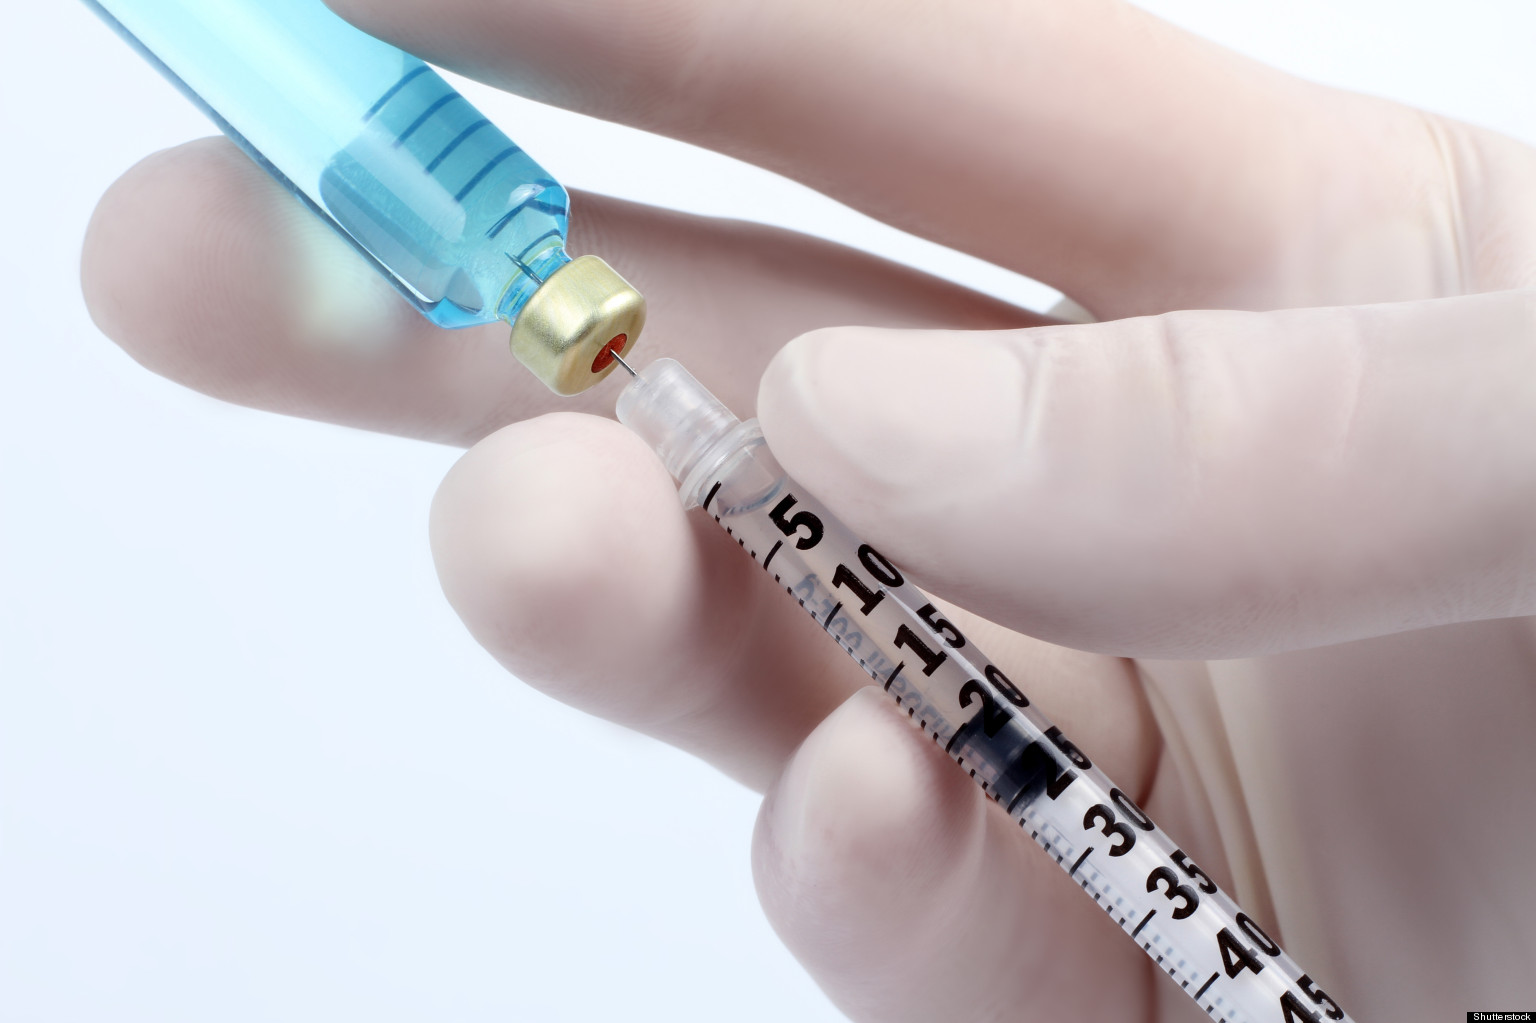 Νέος τύπος εμβολίου παράγεται γρήγορα και τροποποιείται εύκολα